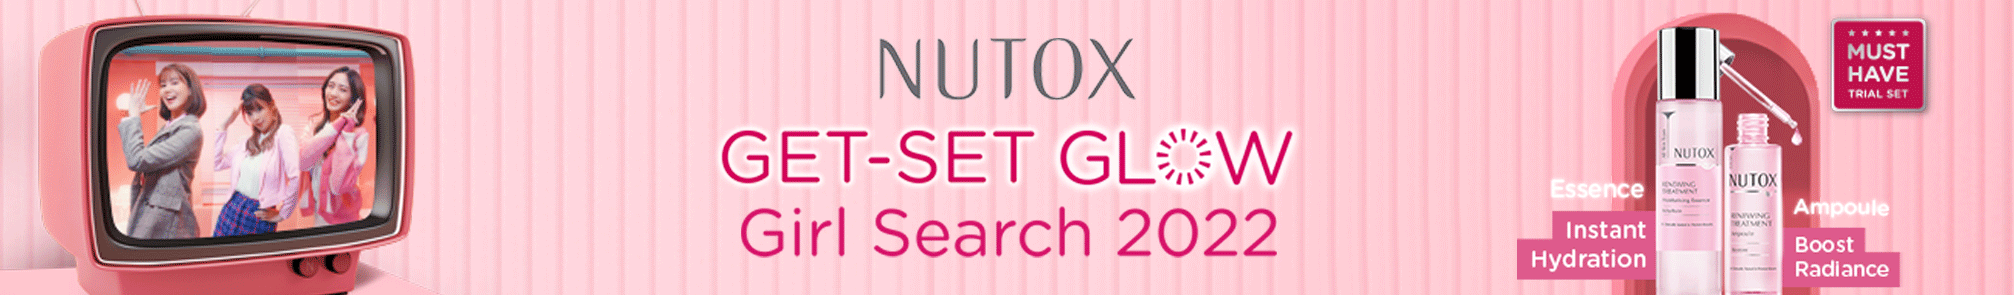 Nutox Get Set Glow